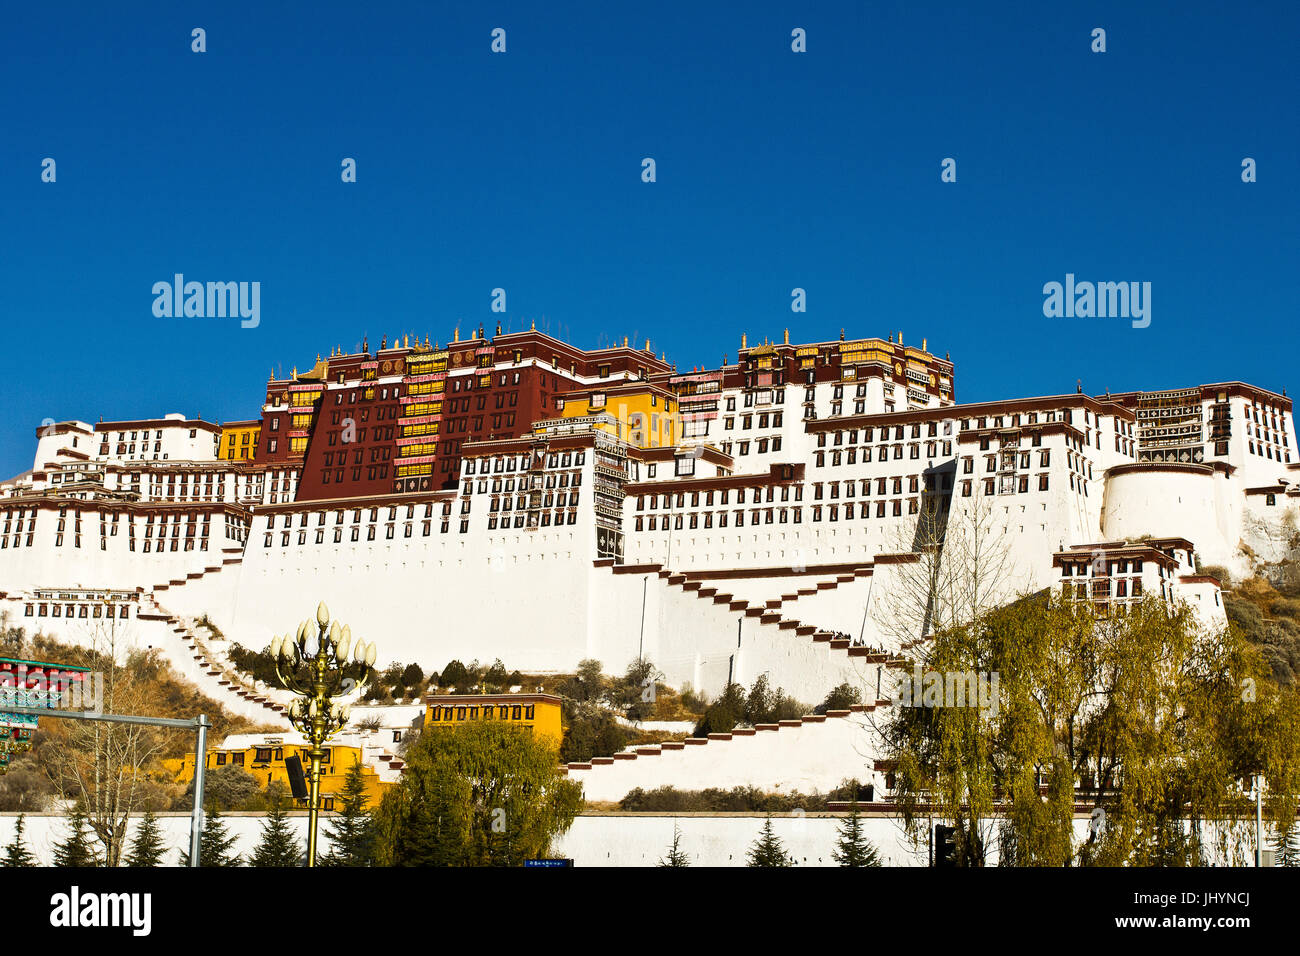 El Palacio de Potala bajo un cielo azul, Sitio del Patrimonio Mundial de la UNESCO, Lhasa, Tíbet, China, Asia Foto de stock